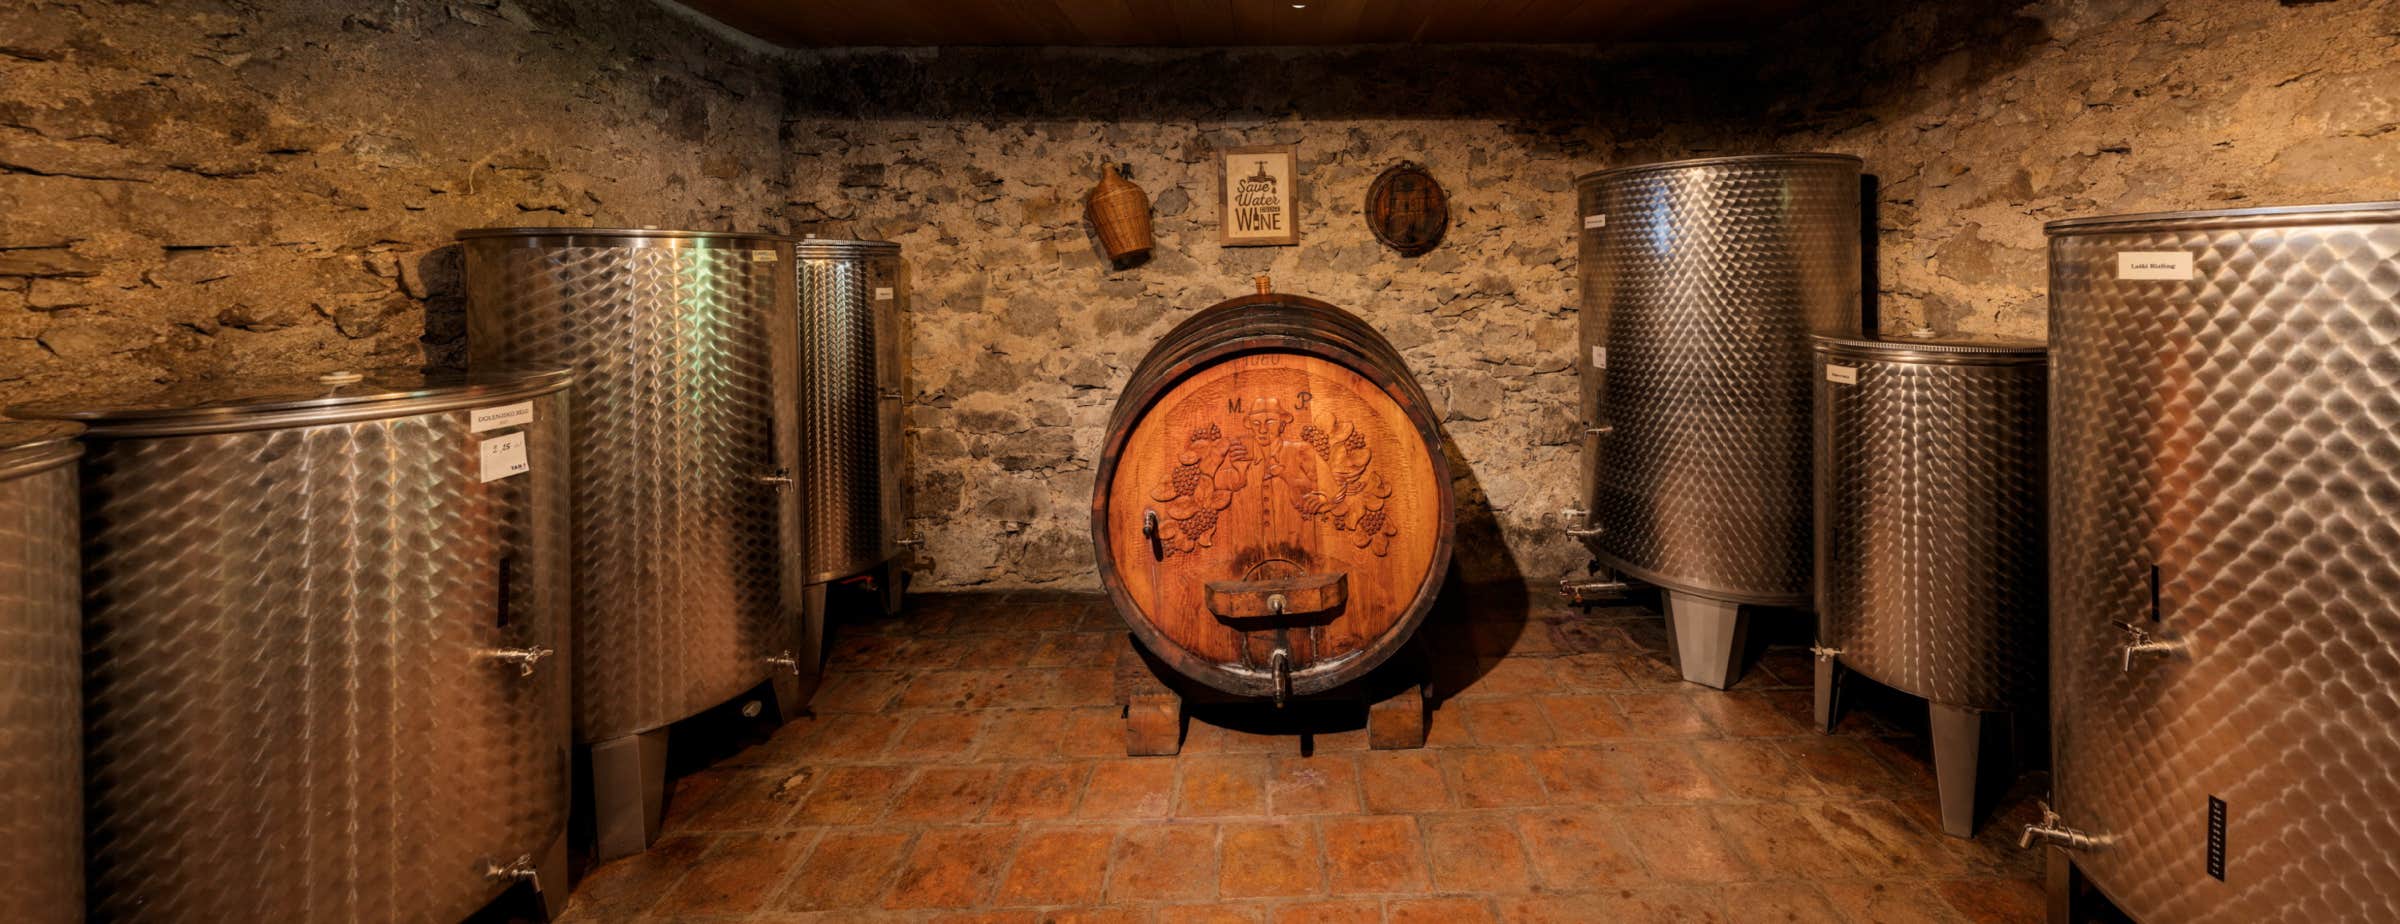 Slika vinskog podruma koja prikazuje veliku drvenu bačvu s rezbarijama čovjeka i grožđa ispred prednjeg zida u sredini slike. Na desnom i lijevom bočnom zidu postavljeno je više metalnih bačvi.